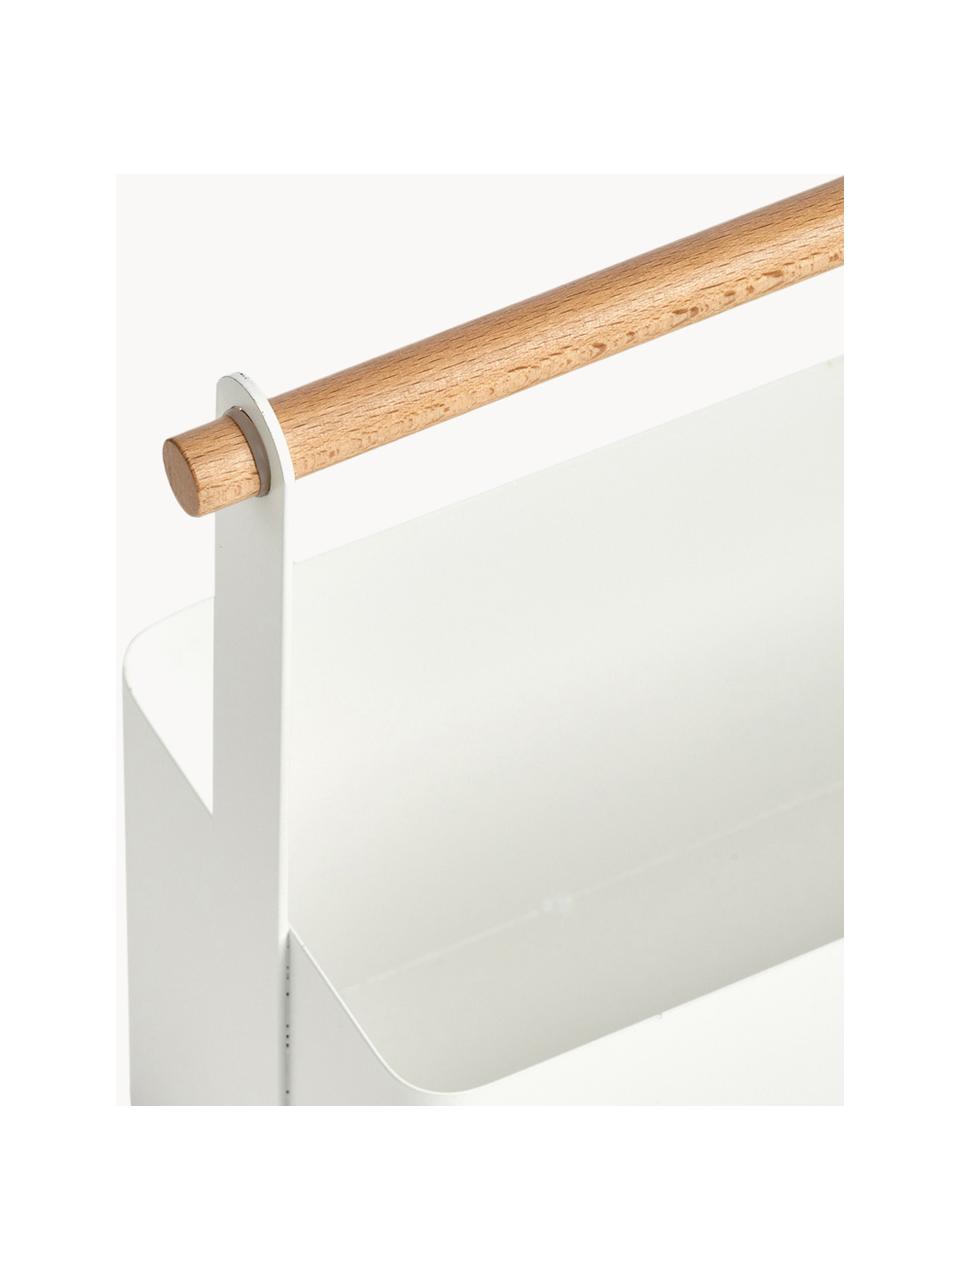 Aufbewahrungskorb Ledina, Korb: Metall, beschichtet, Griff: Buchenholz, Weiß, Helles Holz, B 32 x H 24 cm